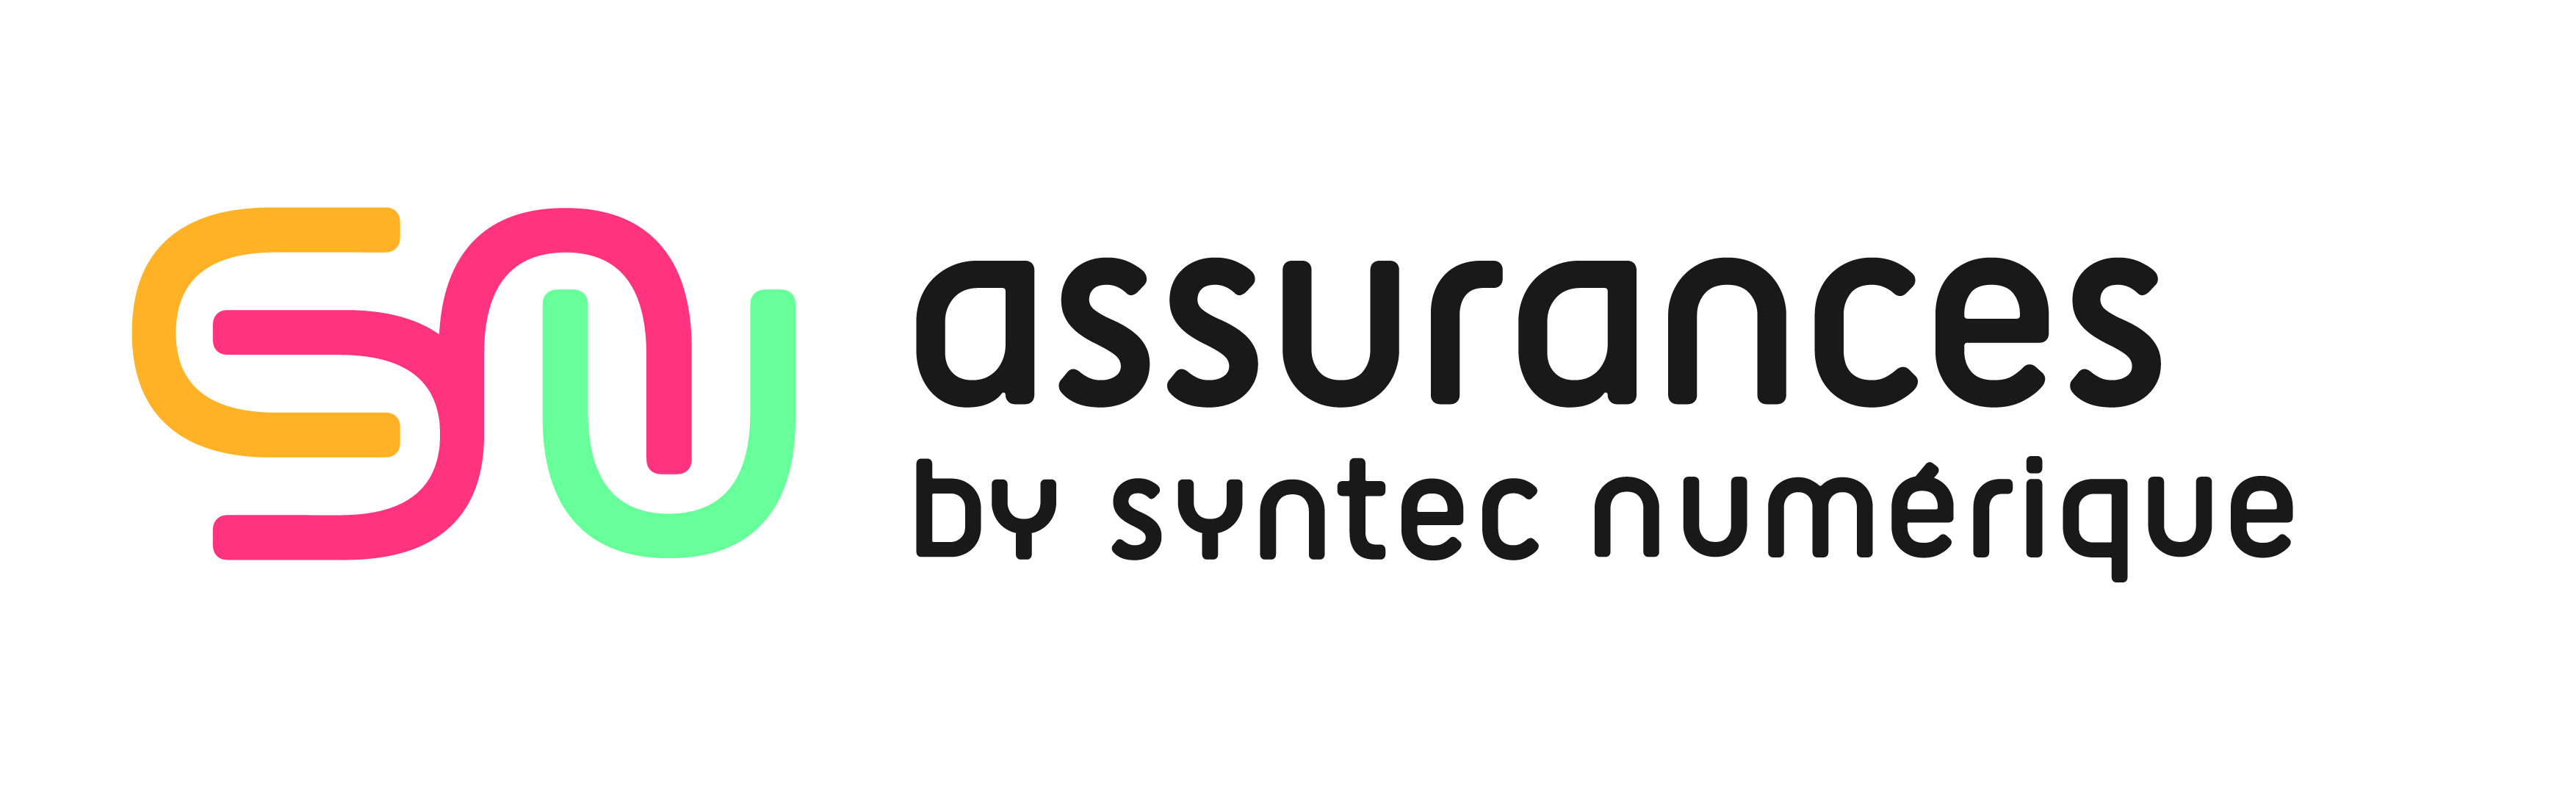 logo Syntec Numérique Assurances